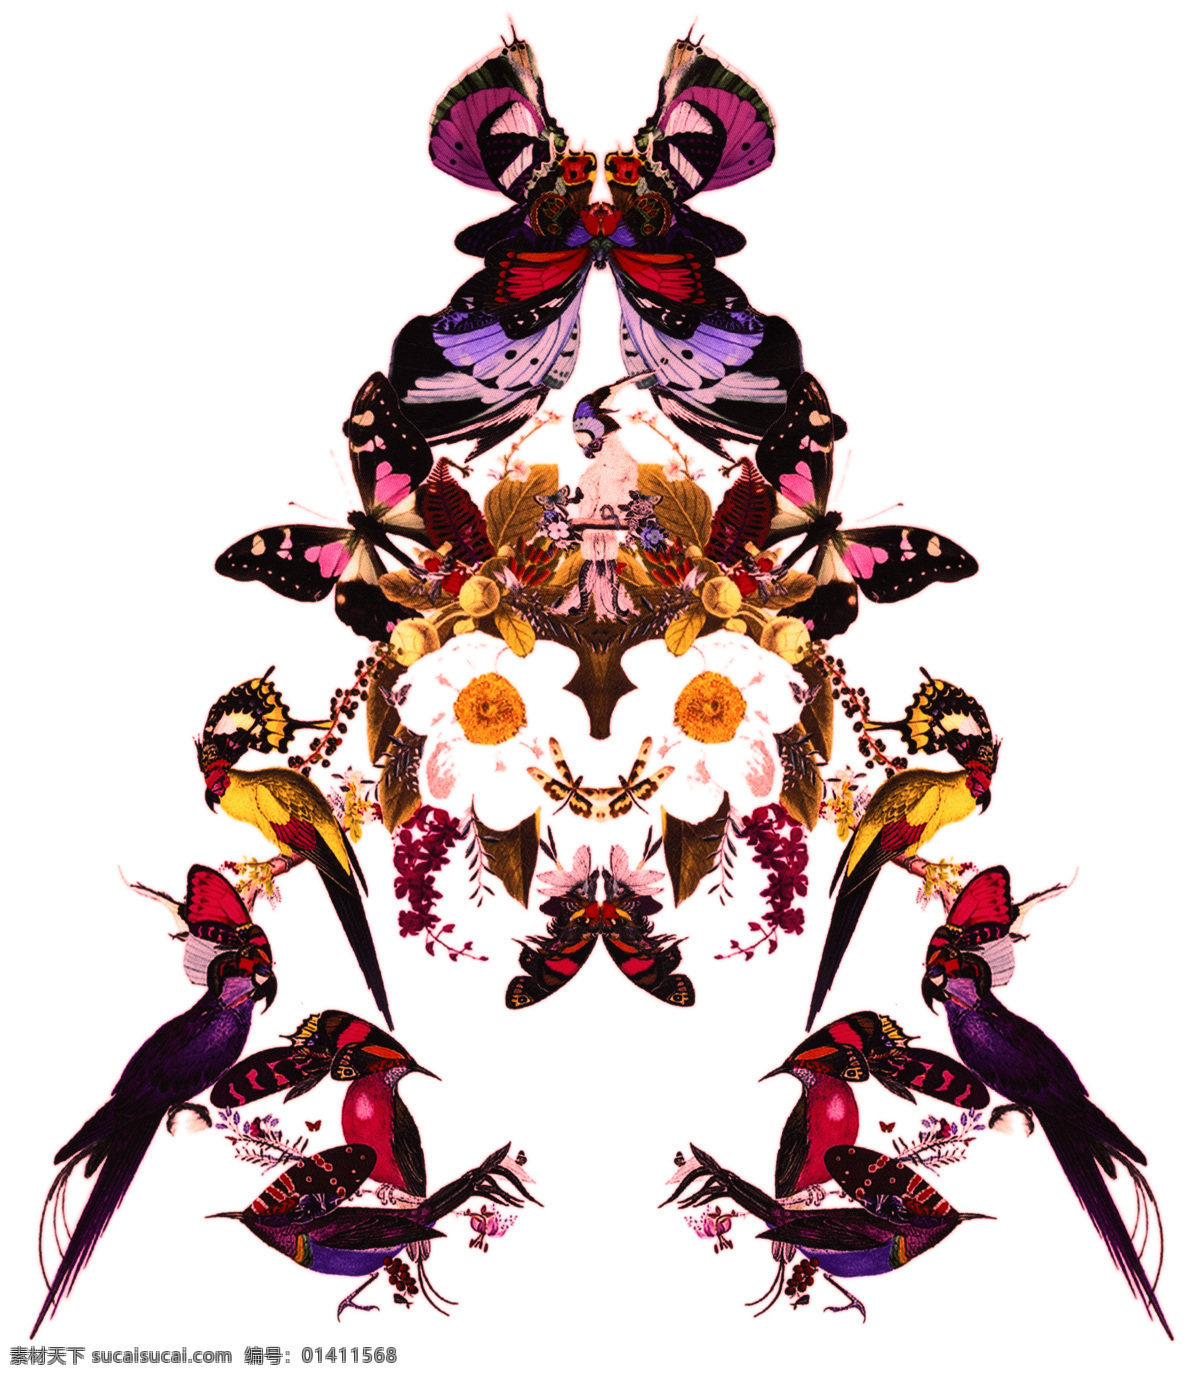 时尚印花 花鸟对称图案 花卉 花朵 鸟 印花 壁纸 地毯 背景图案 装饰图案 花卉花纹 生物世界 鸟类